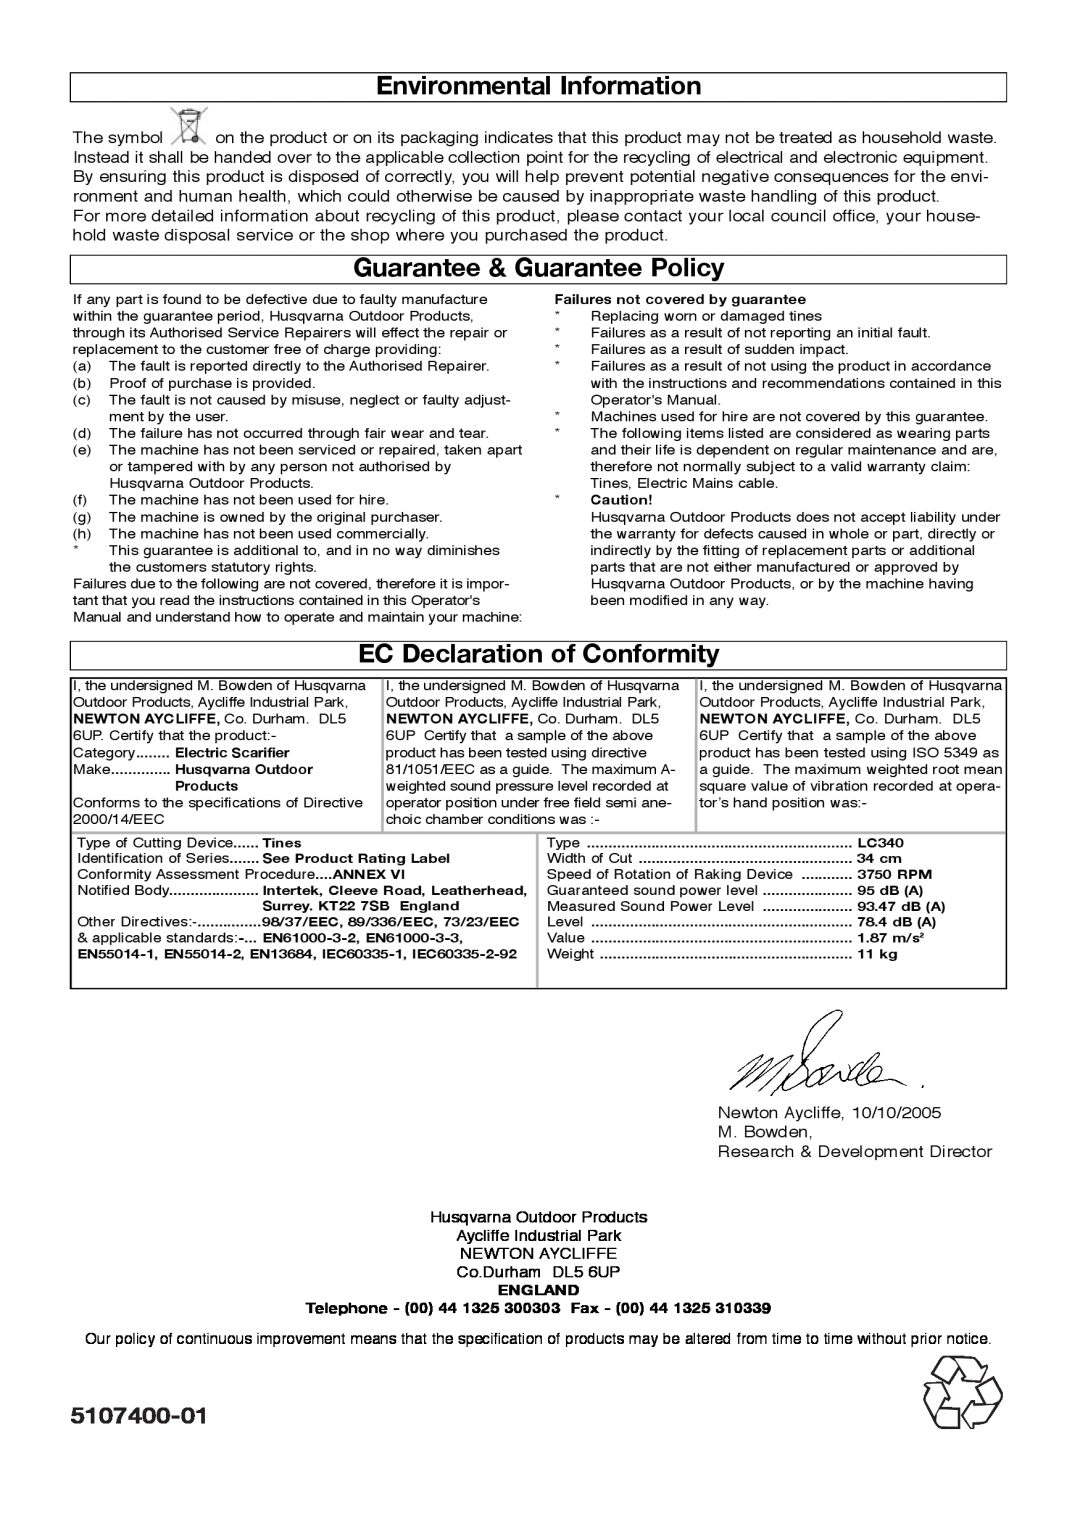 Flymo lawnrake Environmental Information, Guarantee & Guarantee Policy, EC Declaration of Conformity, 5107400-01, England 